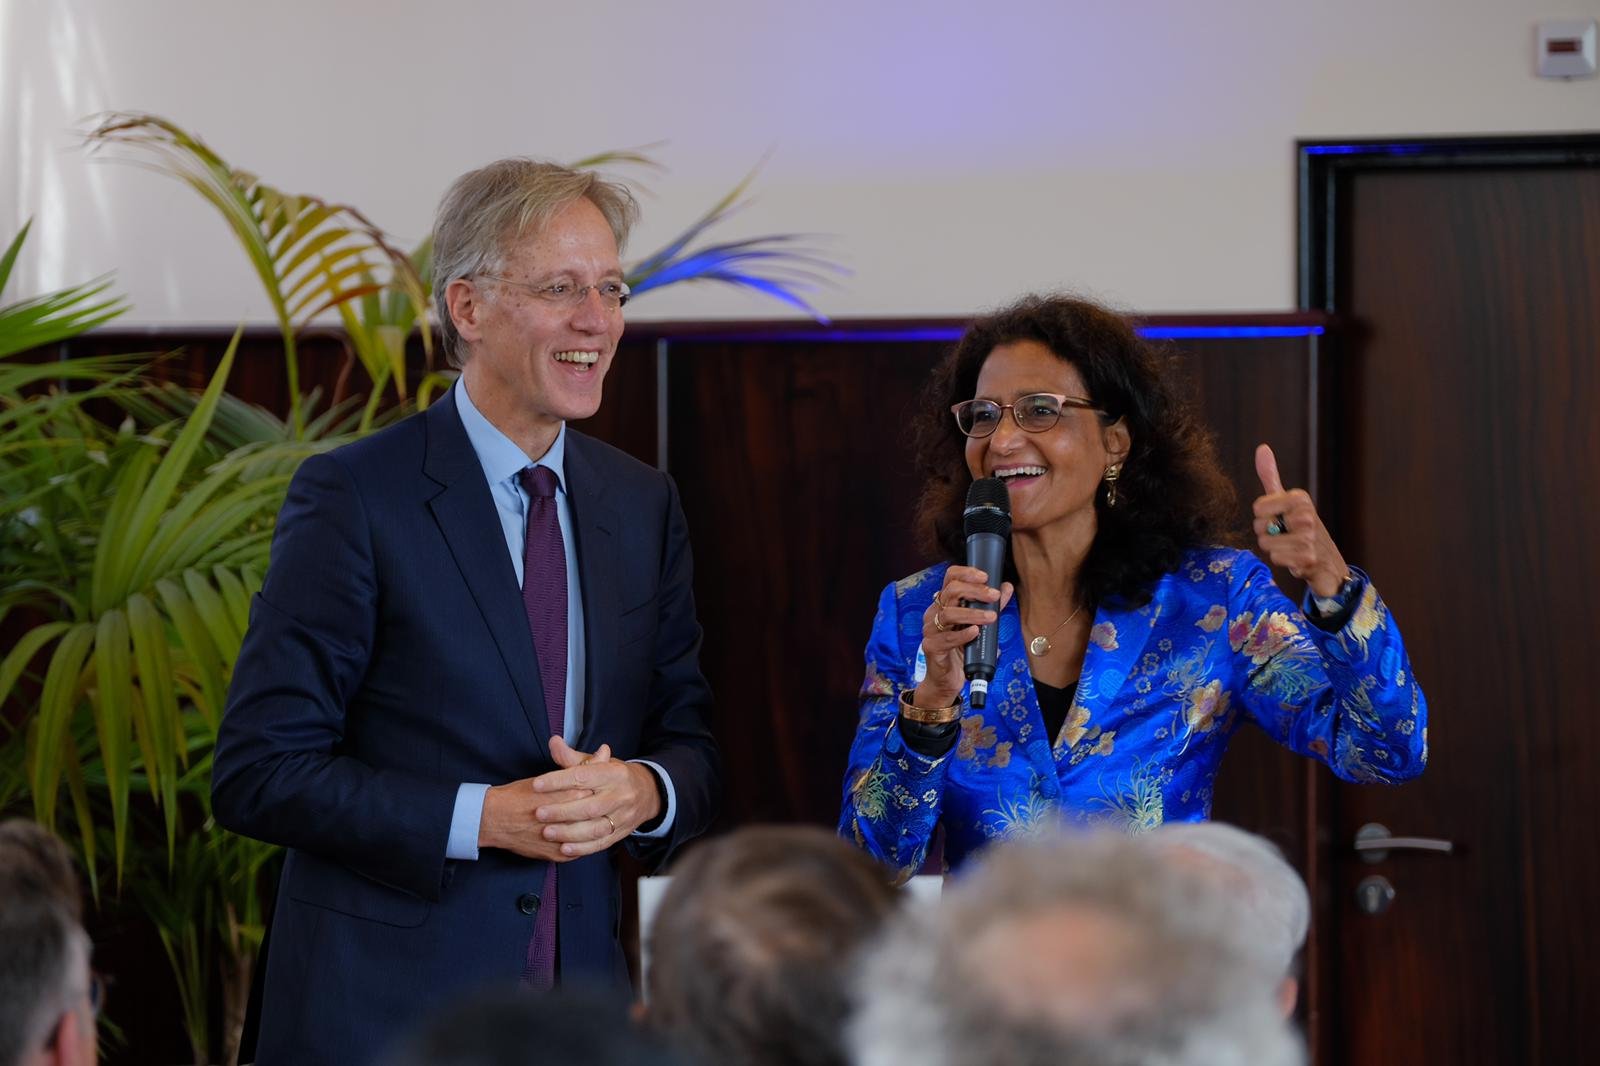 Robbert Dijkgraaf (minister van OCW) en Kathleen Ferrier (voorzitter Unesco Commissie) in gesprek op het podium tijdens de Unesco Familiedag 2022.